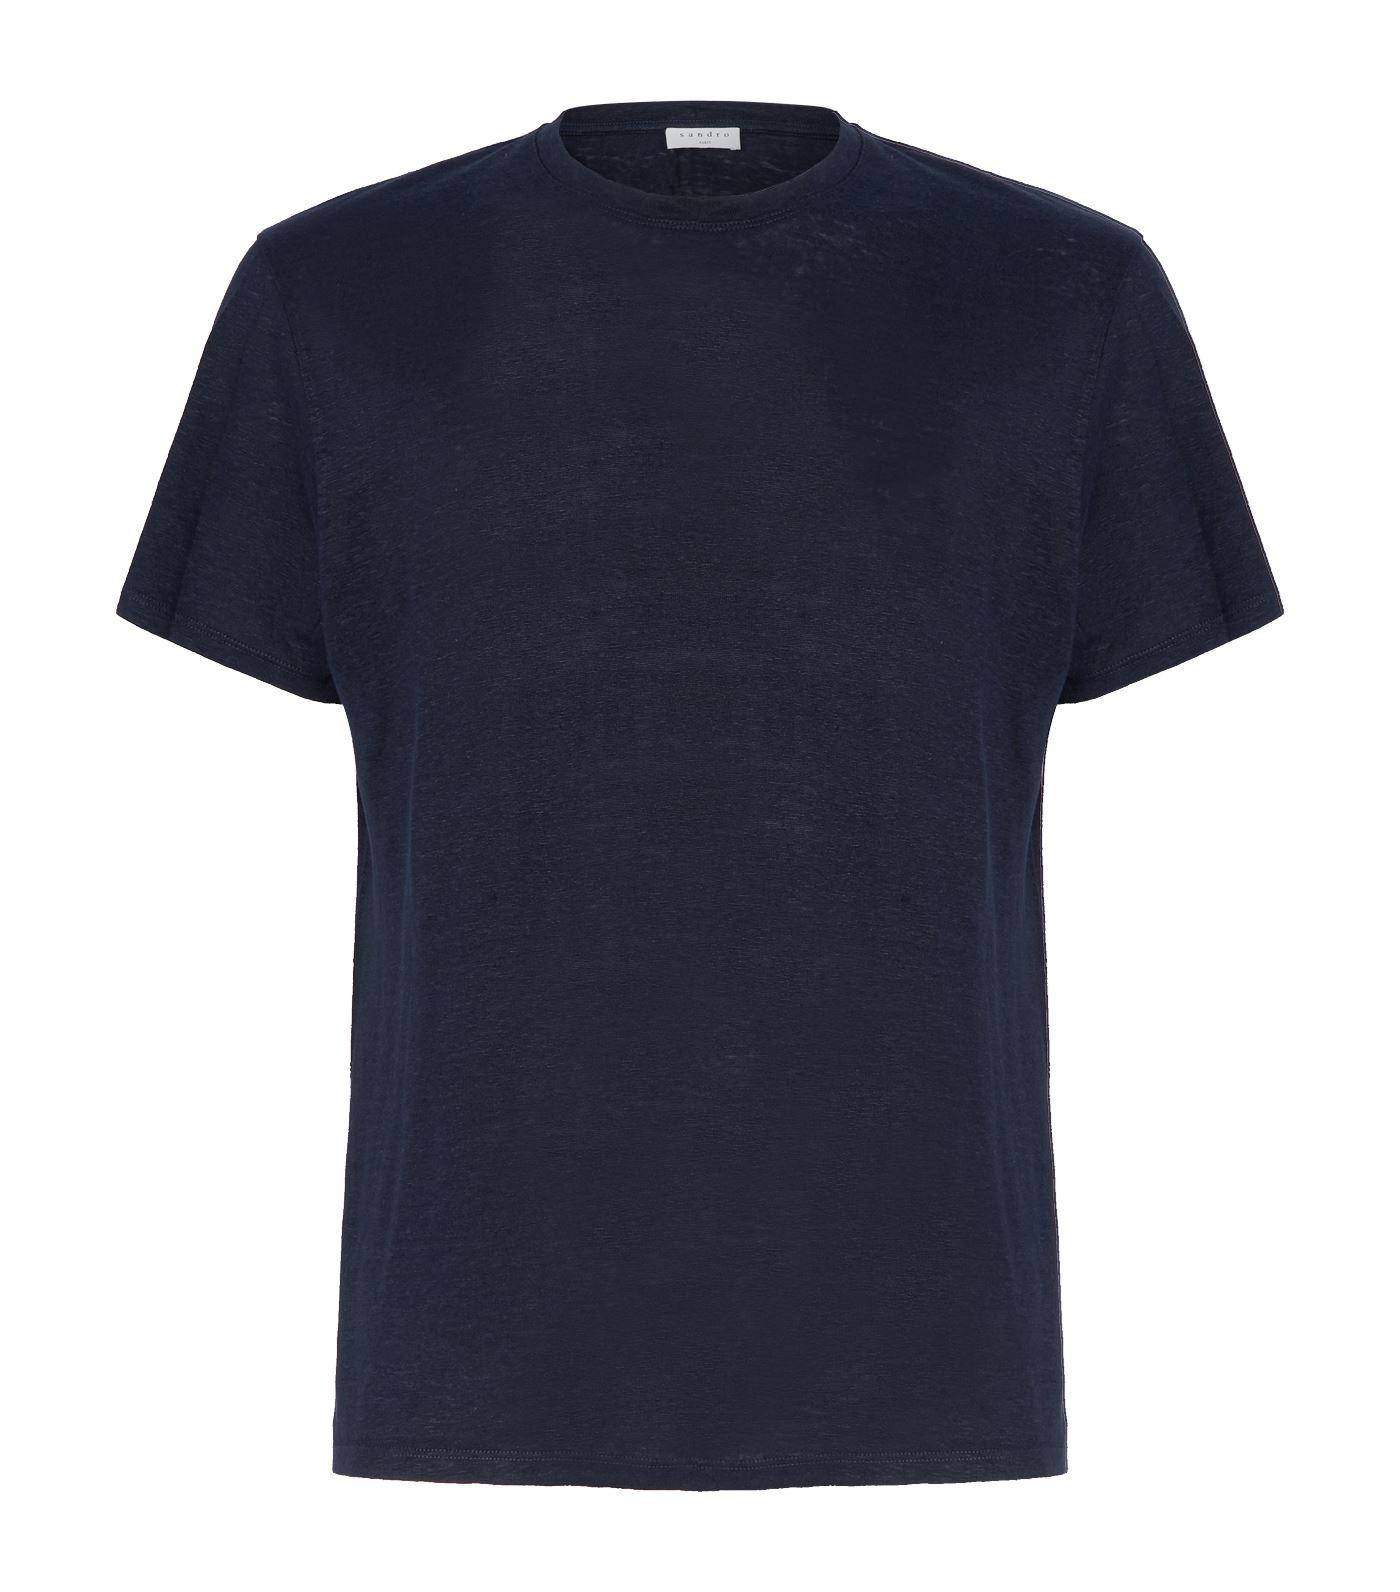 Sandro Linen T-shirt in Blue for Men - Save 1% - Lyst